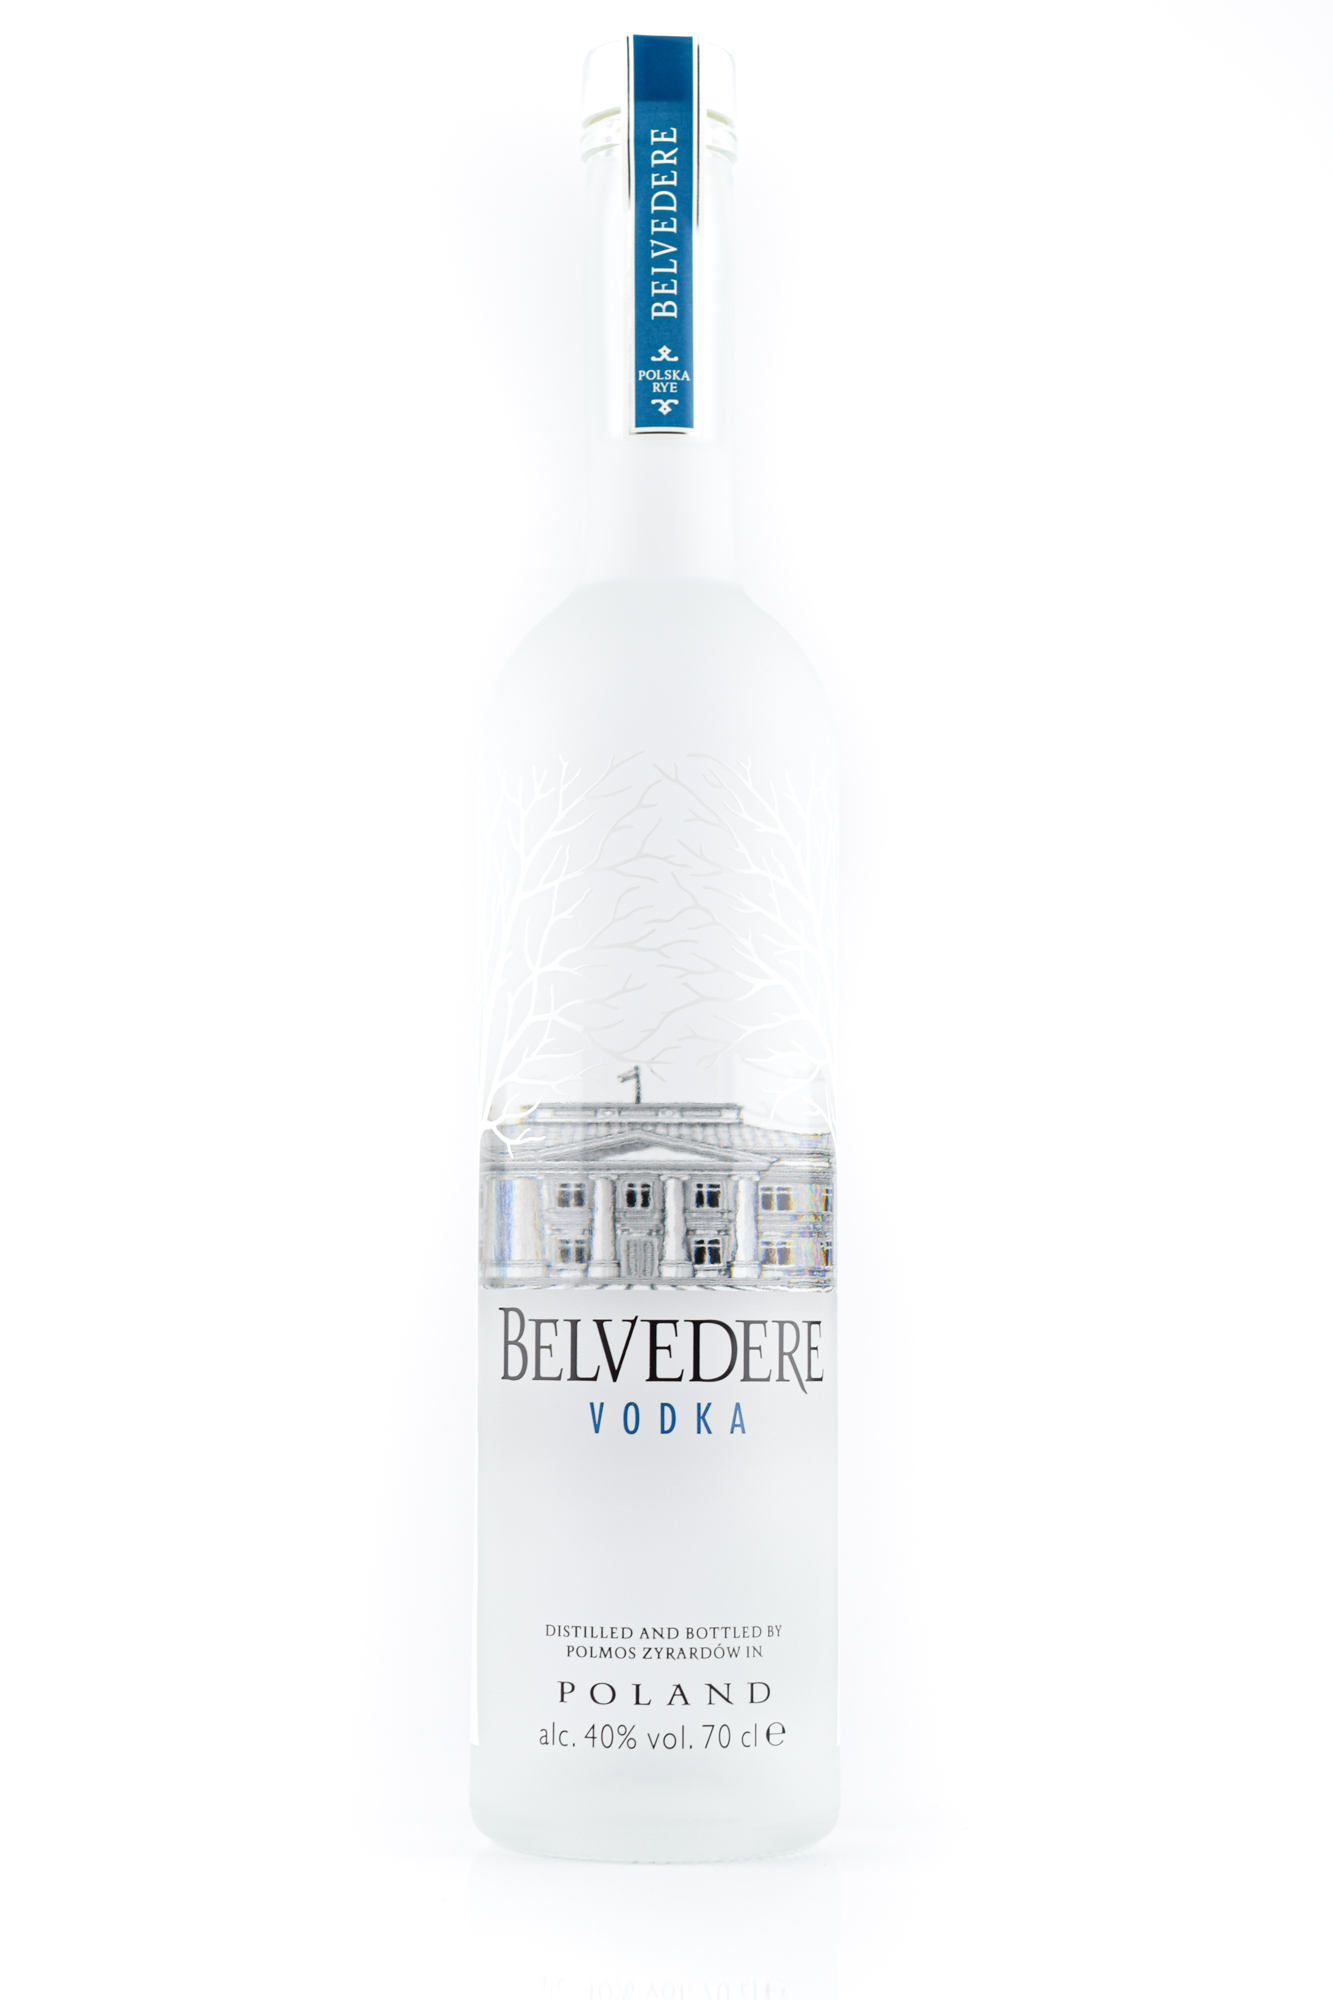 Weitere Spirituosen / Vodka / Belvedere Vodka 0,7 ltr.